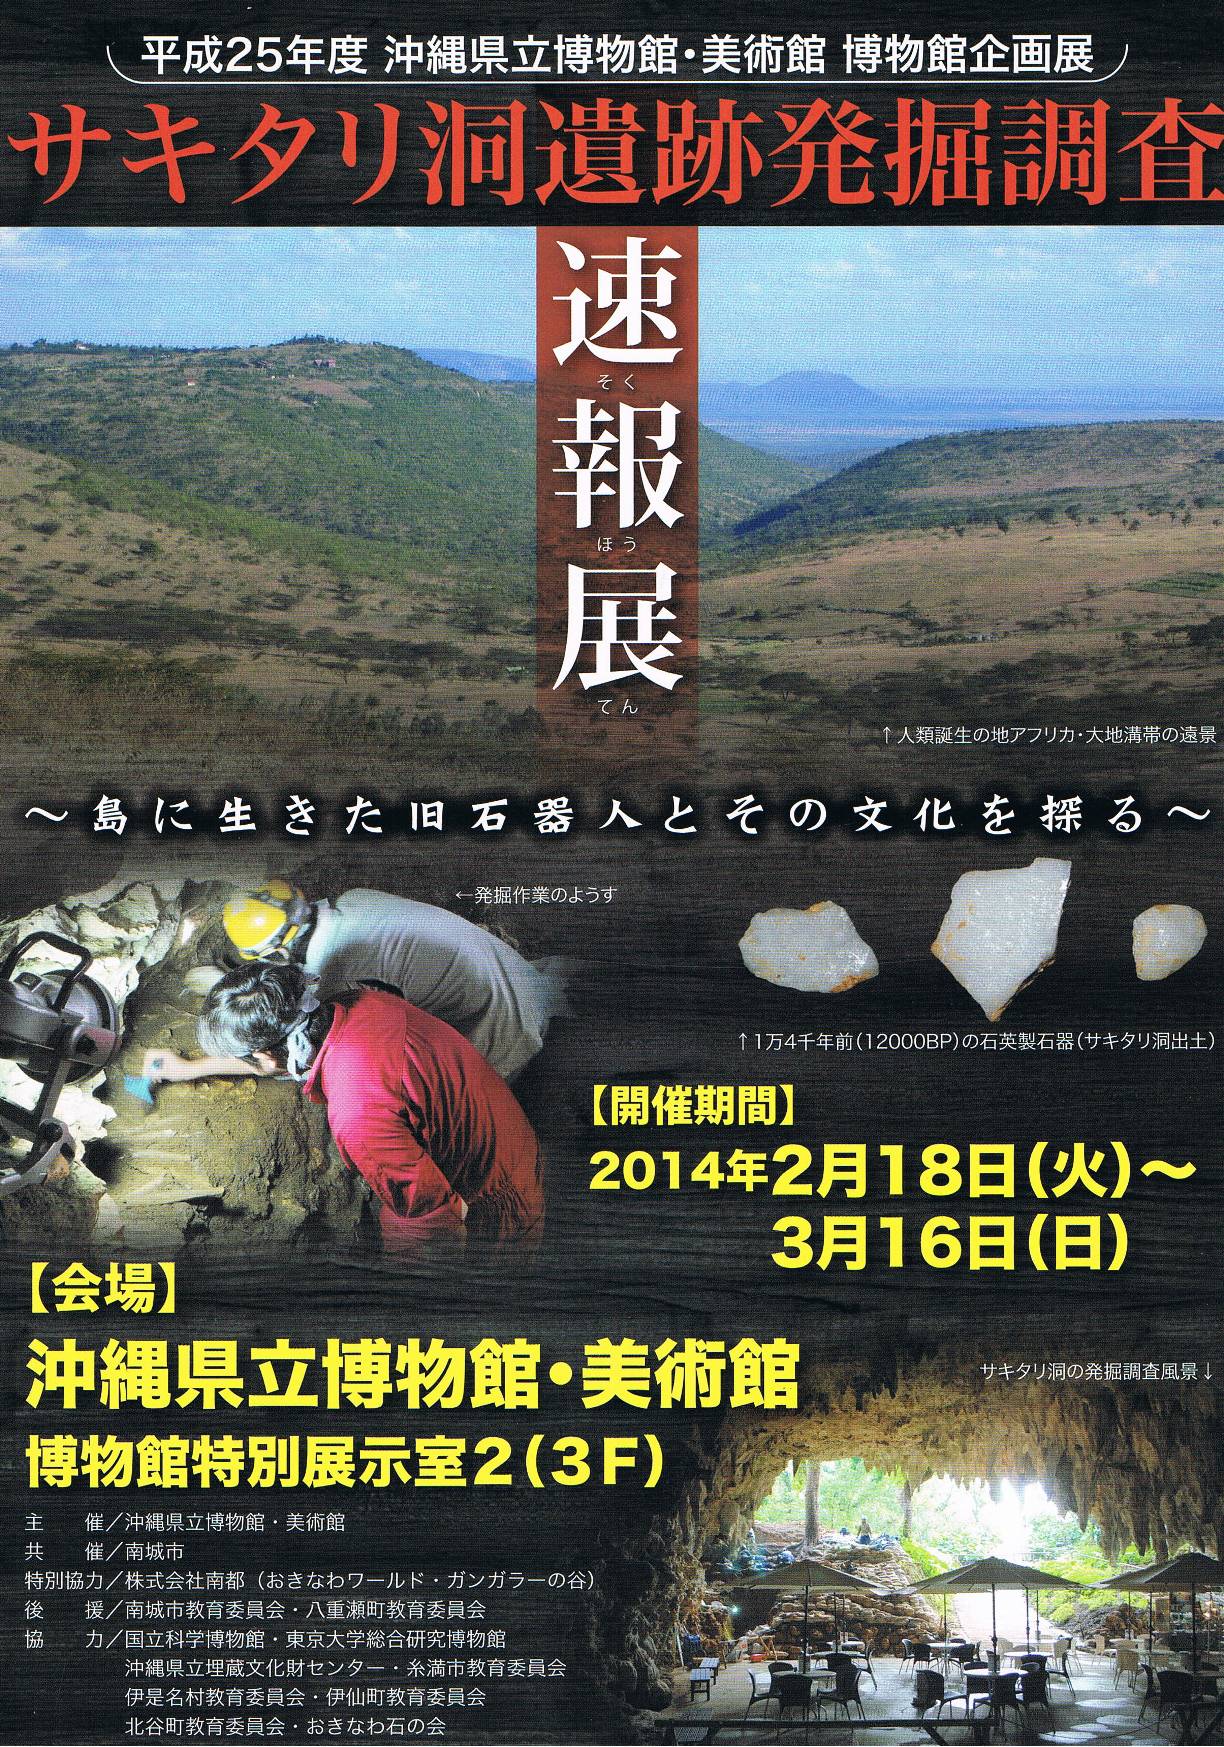 企画展「サキタリ洞遺跡発掘調査速報展－島に生きた旧石器人とその文化を探る－」